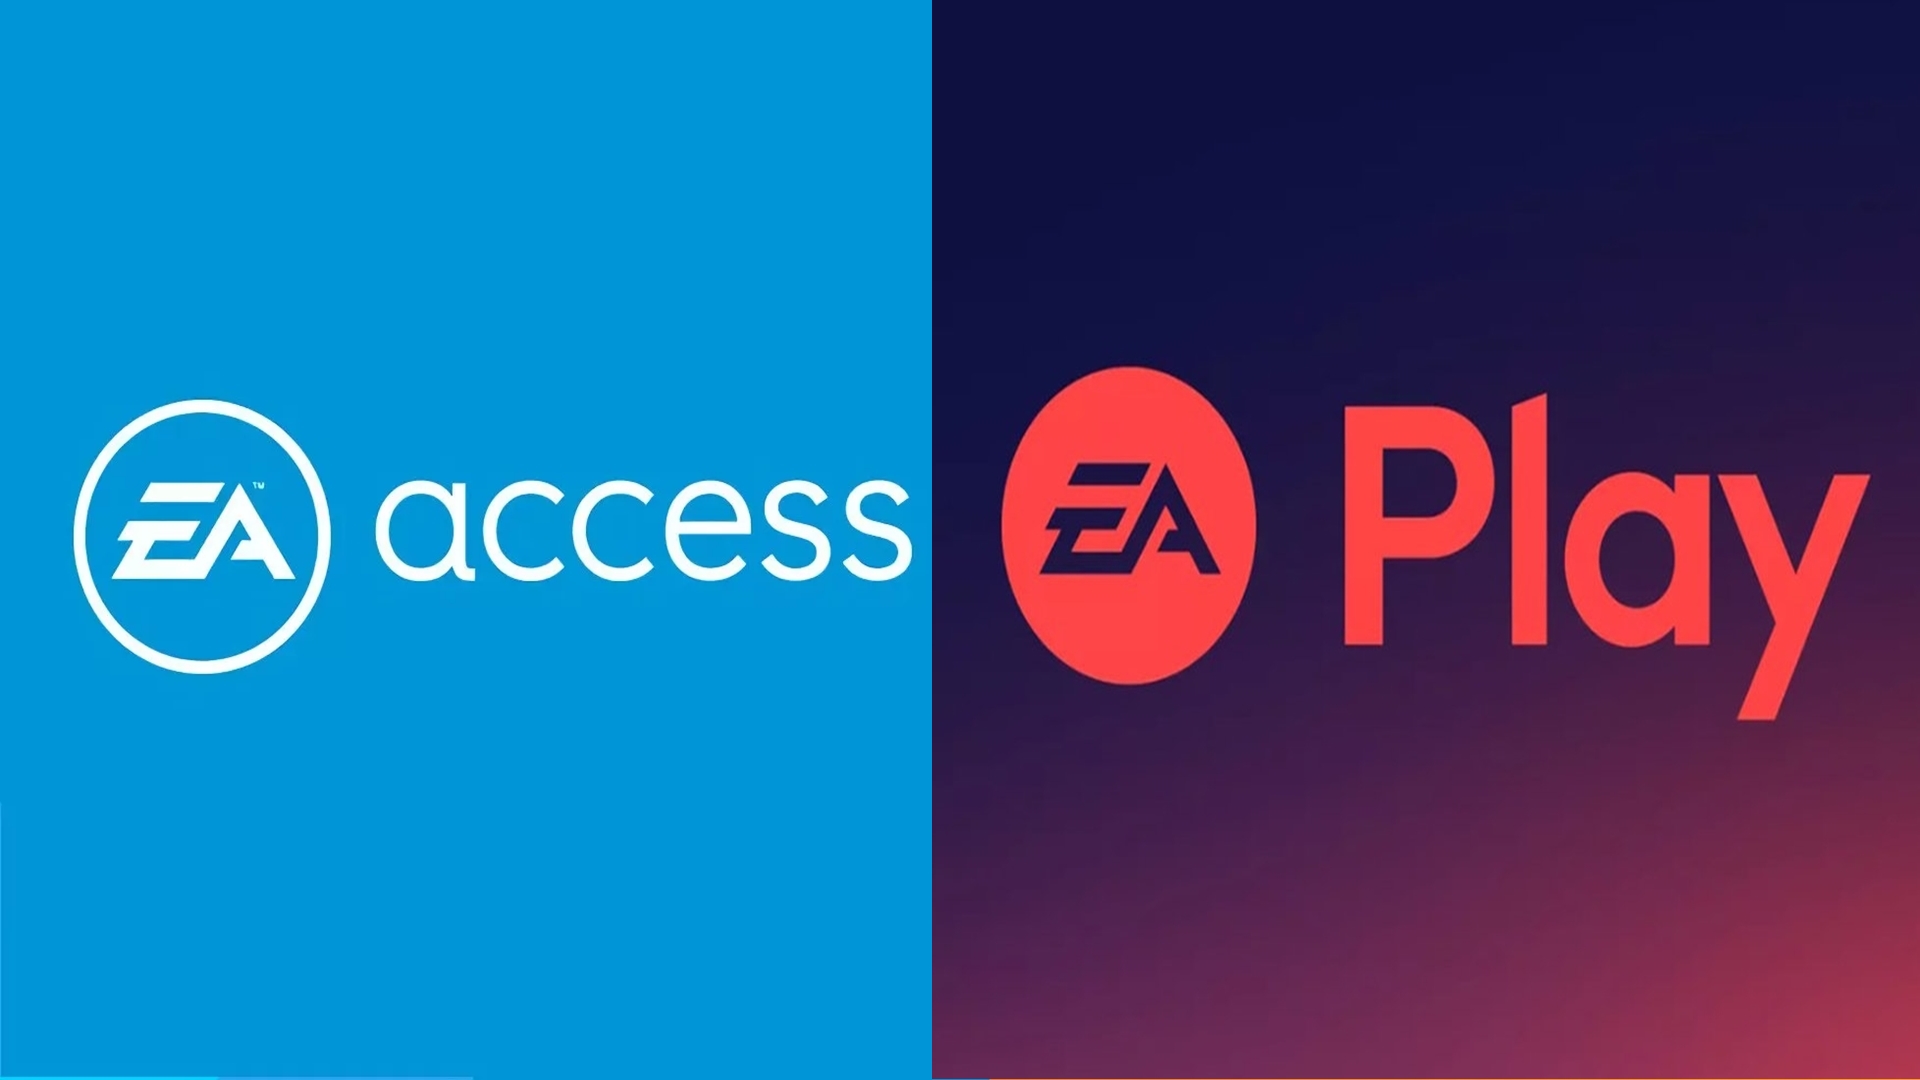 xbox game pass ea access